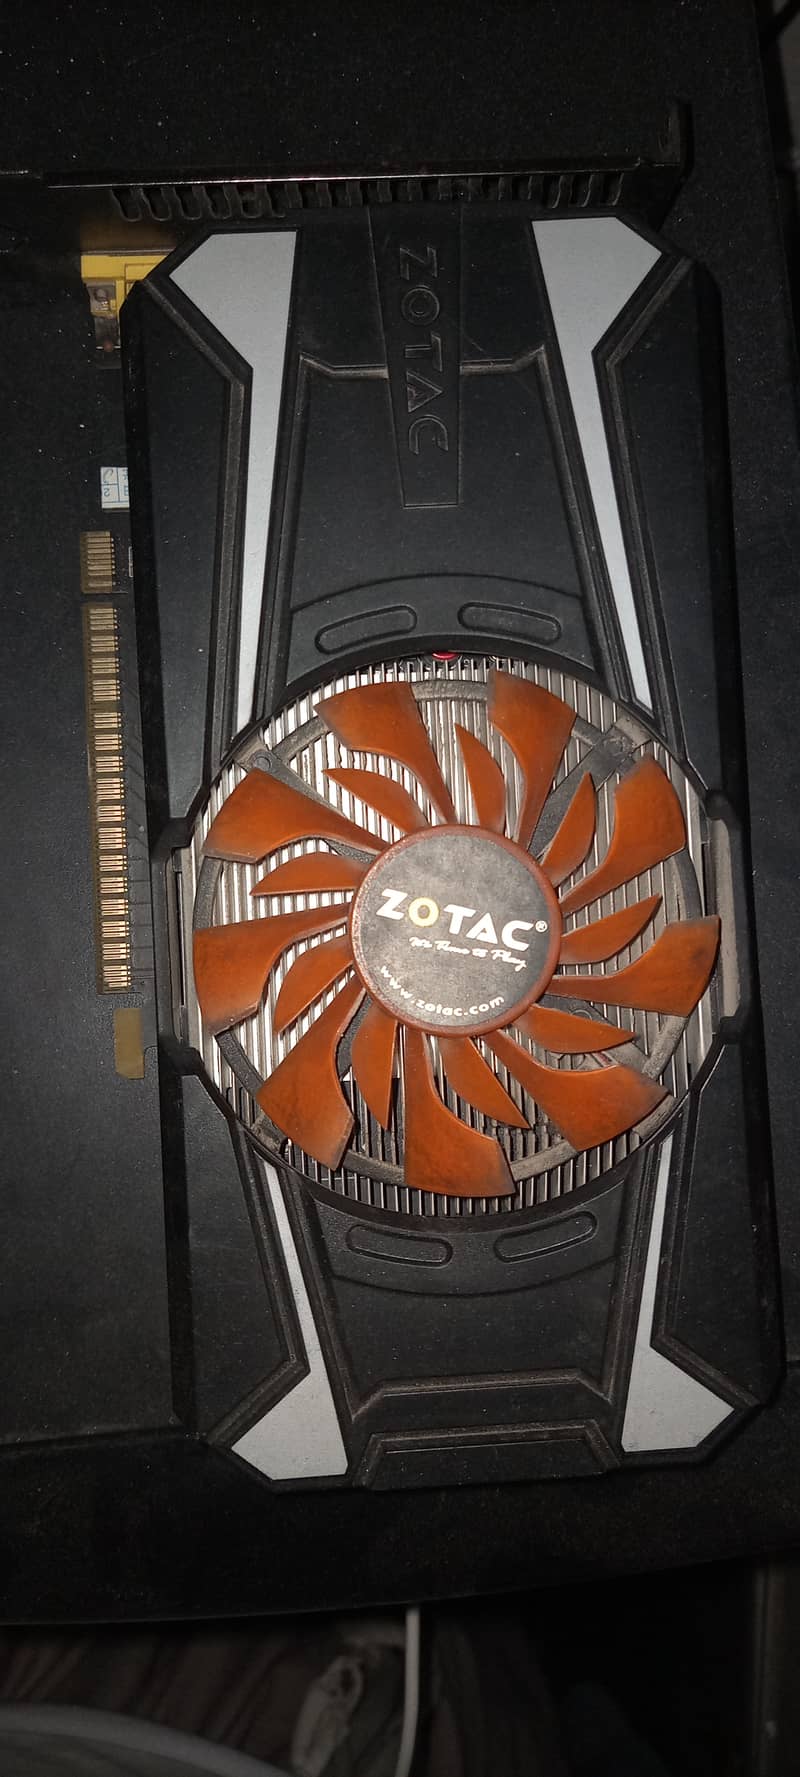 Zotac GTX 750ti 2GD5 single fan 0